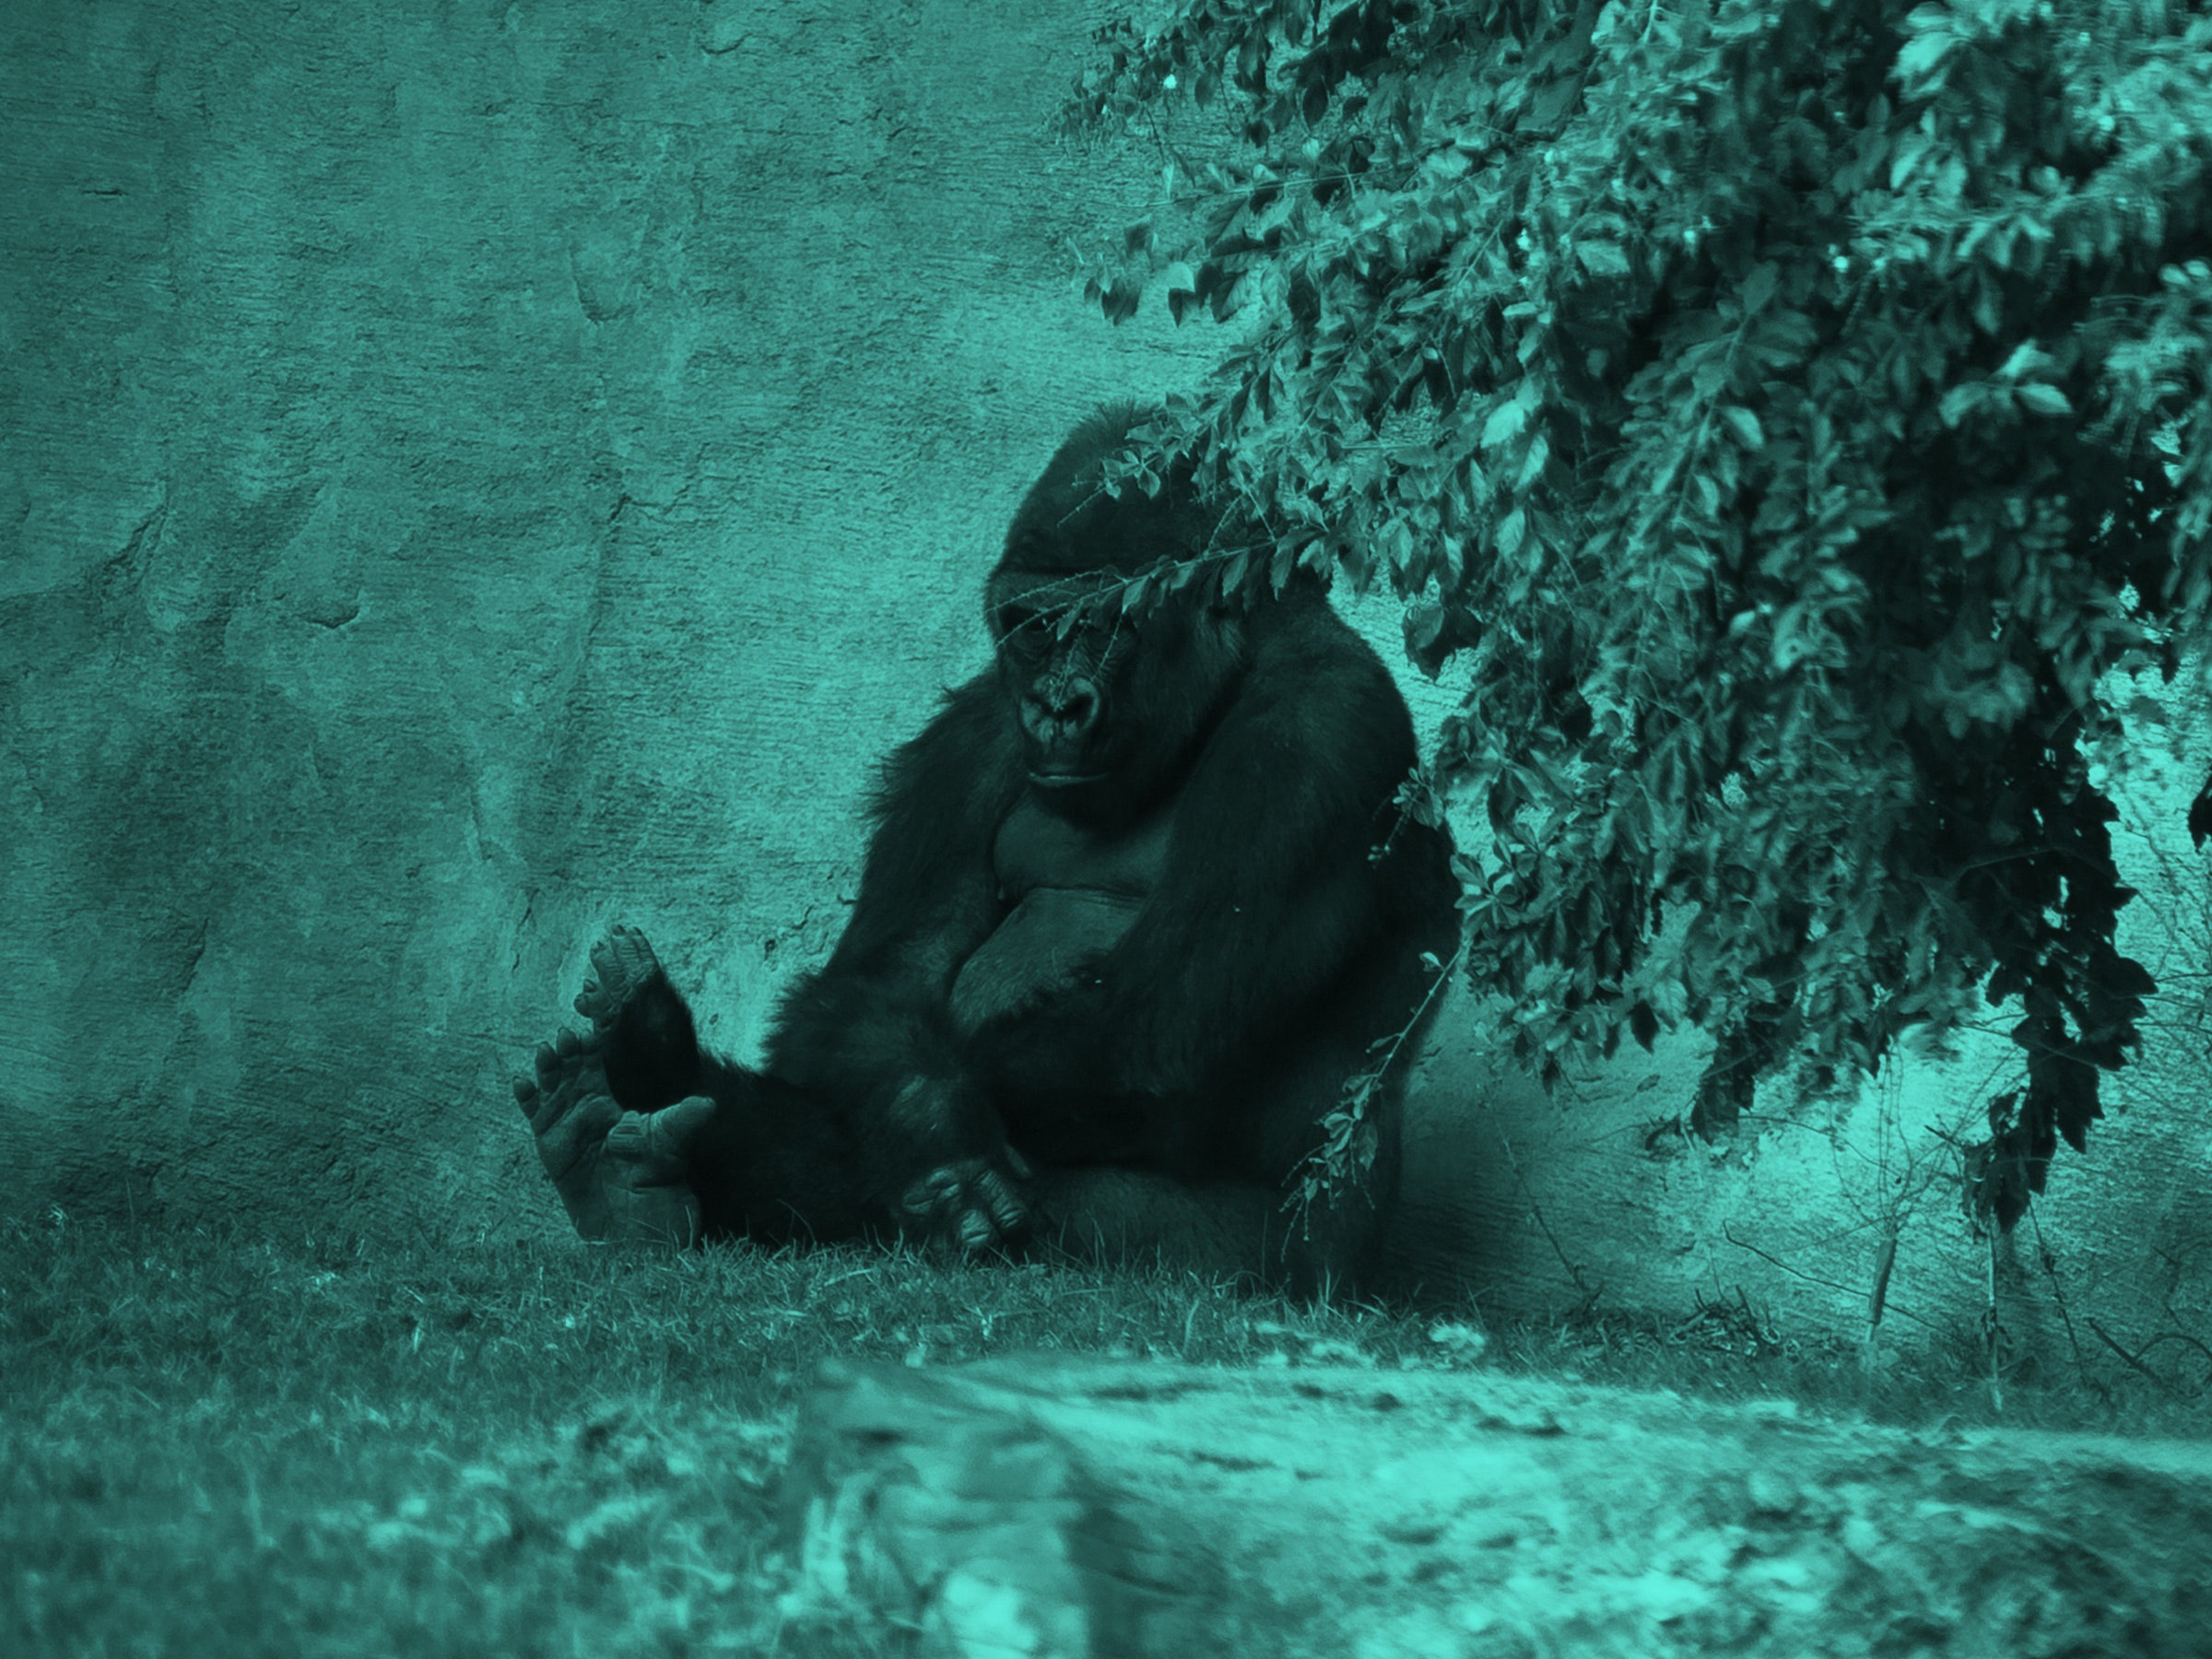 O gorila parece triste e se esconde atrás das árvores